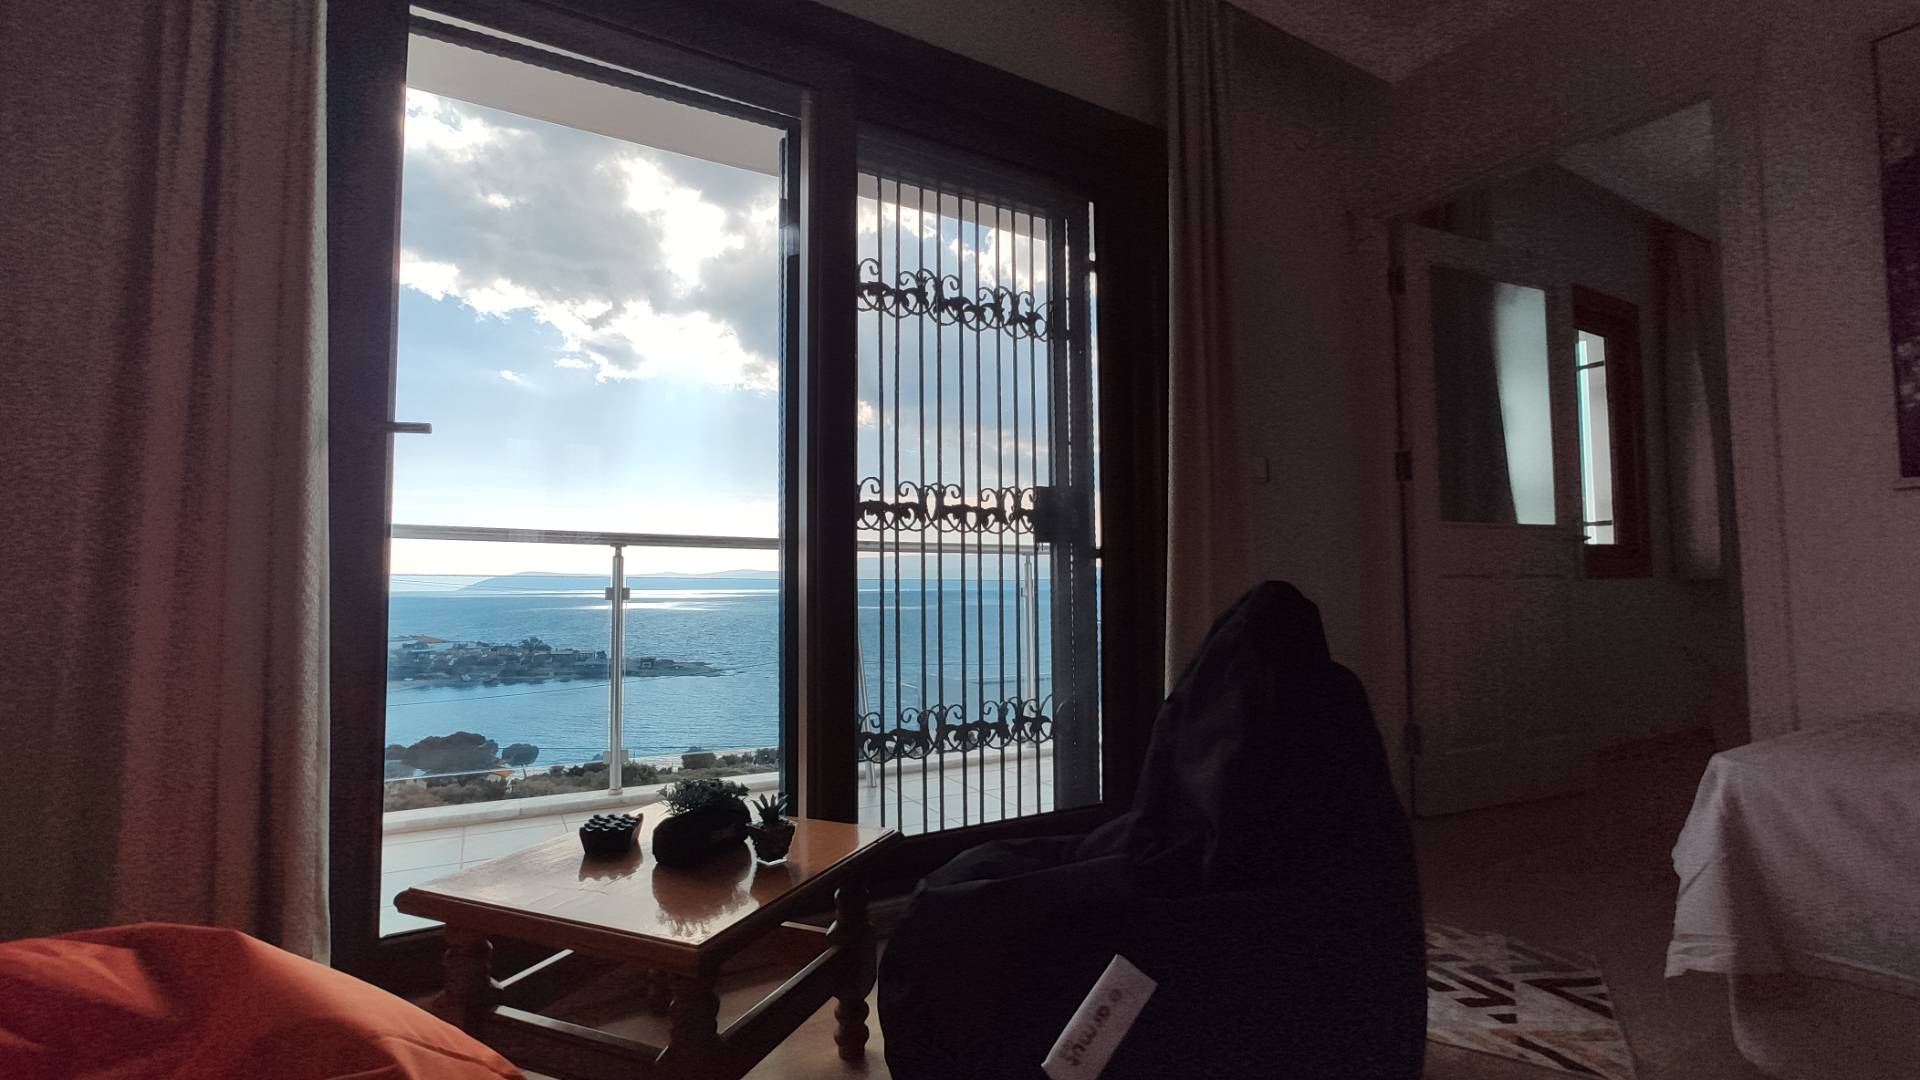 Sığacık Akkum’da Eşsiz Deniz Manzaralı, 3 Katlı, Kiralık Lüks Villa